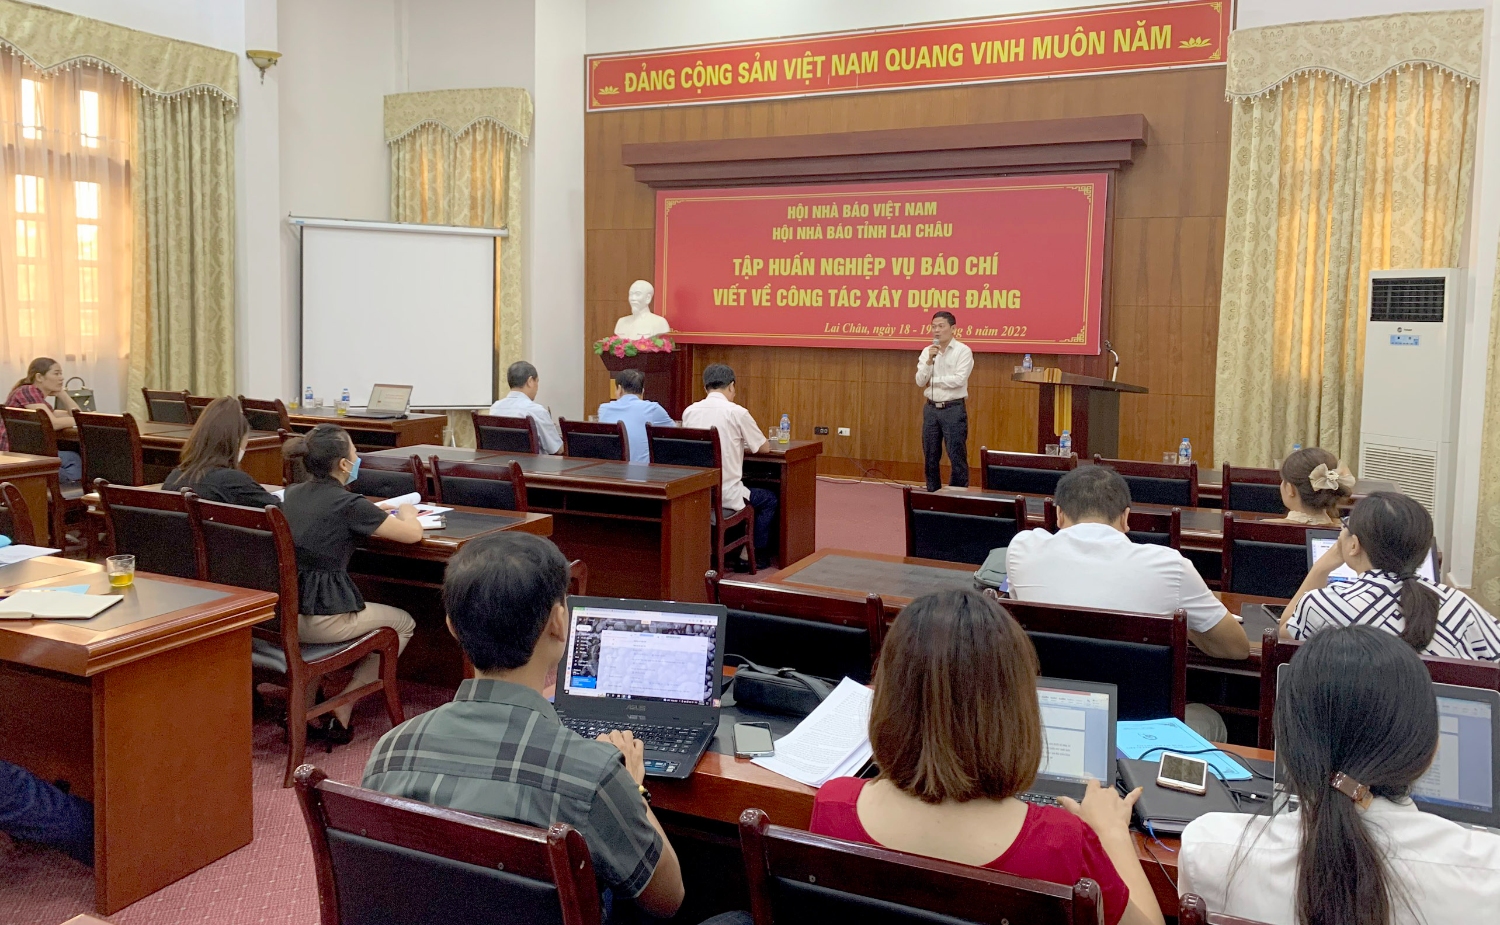 Tiến sỹ Nguyễn Tri Thức - Ủy viên Ban Biên tập, Trưởng ban Chuyên đề và chuyên san Tạp chí Cộng sản hướng dẫn kỹ năng viết về xây dựng Đảng